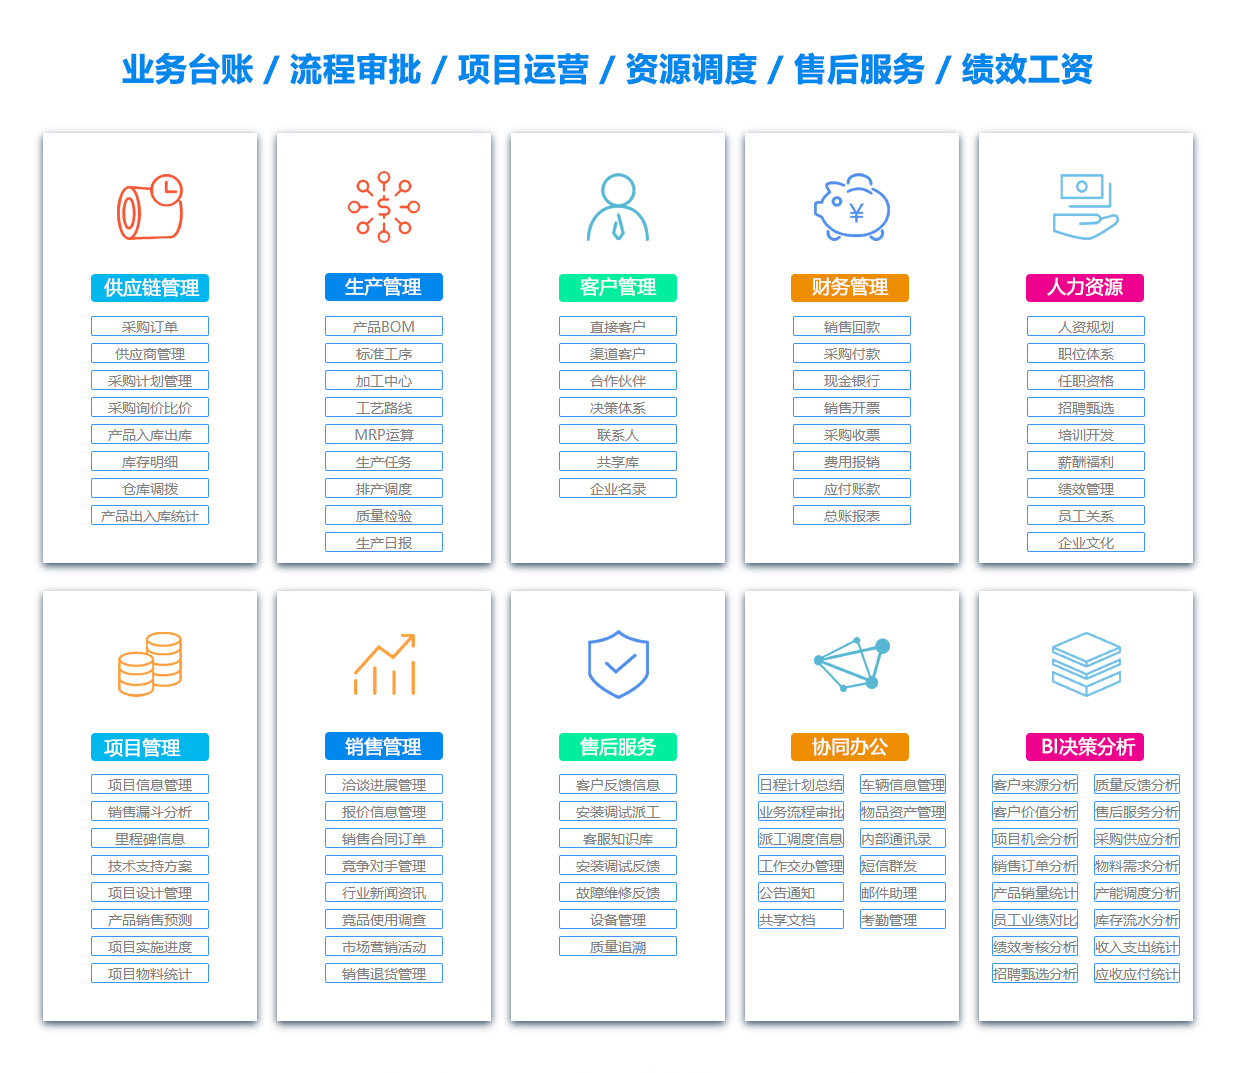 台州供应链软件